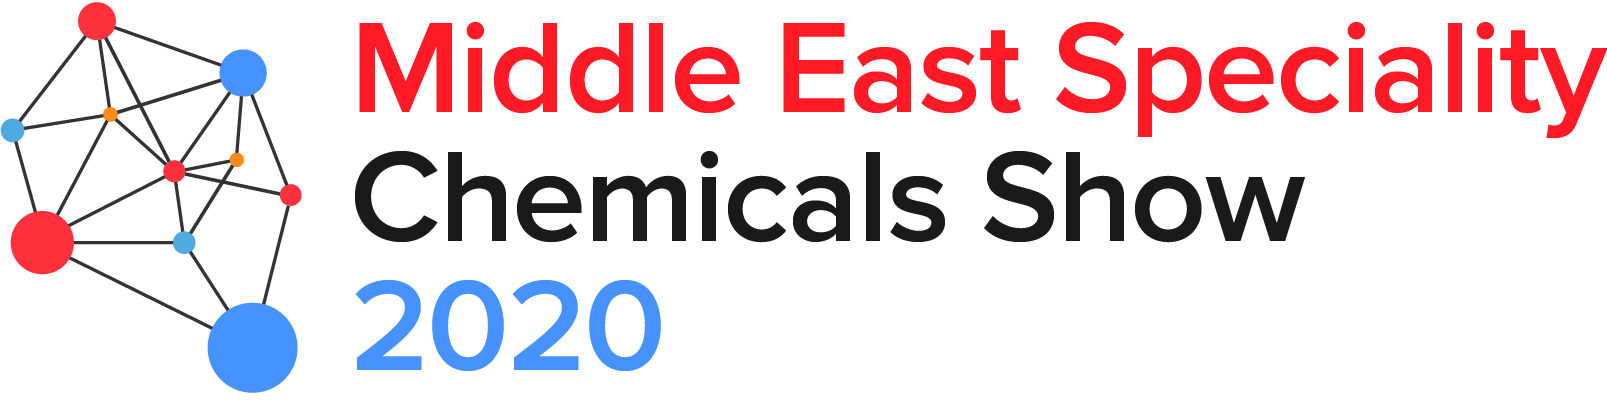 2020中东精细化工展